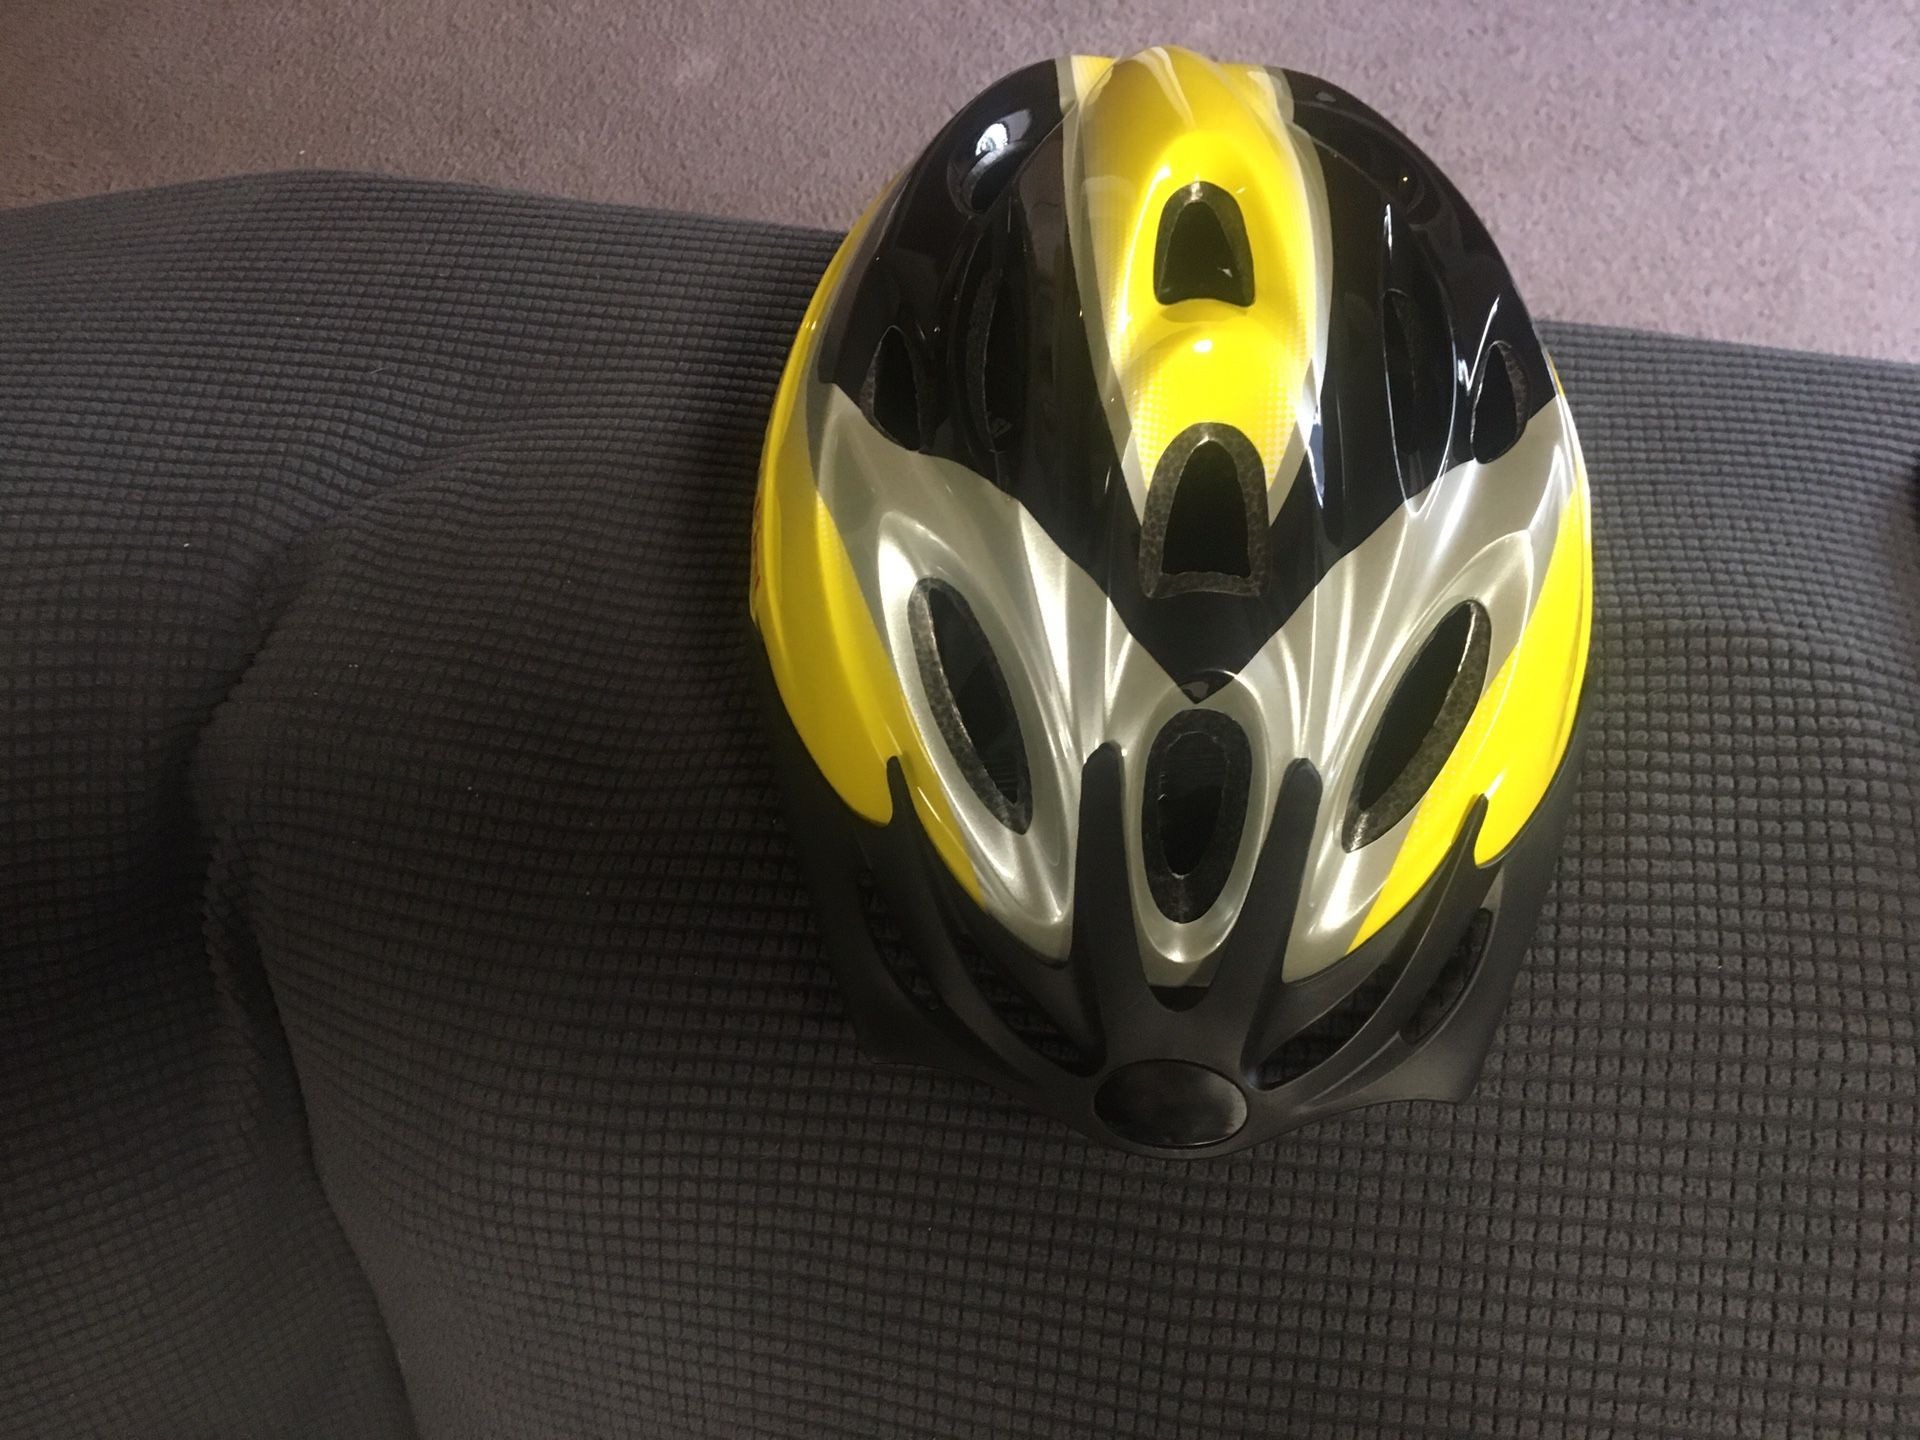 Brand New Bike Helmet size:L